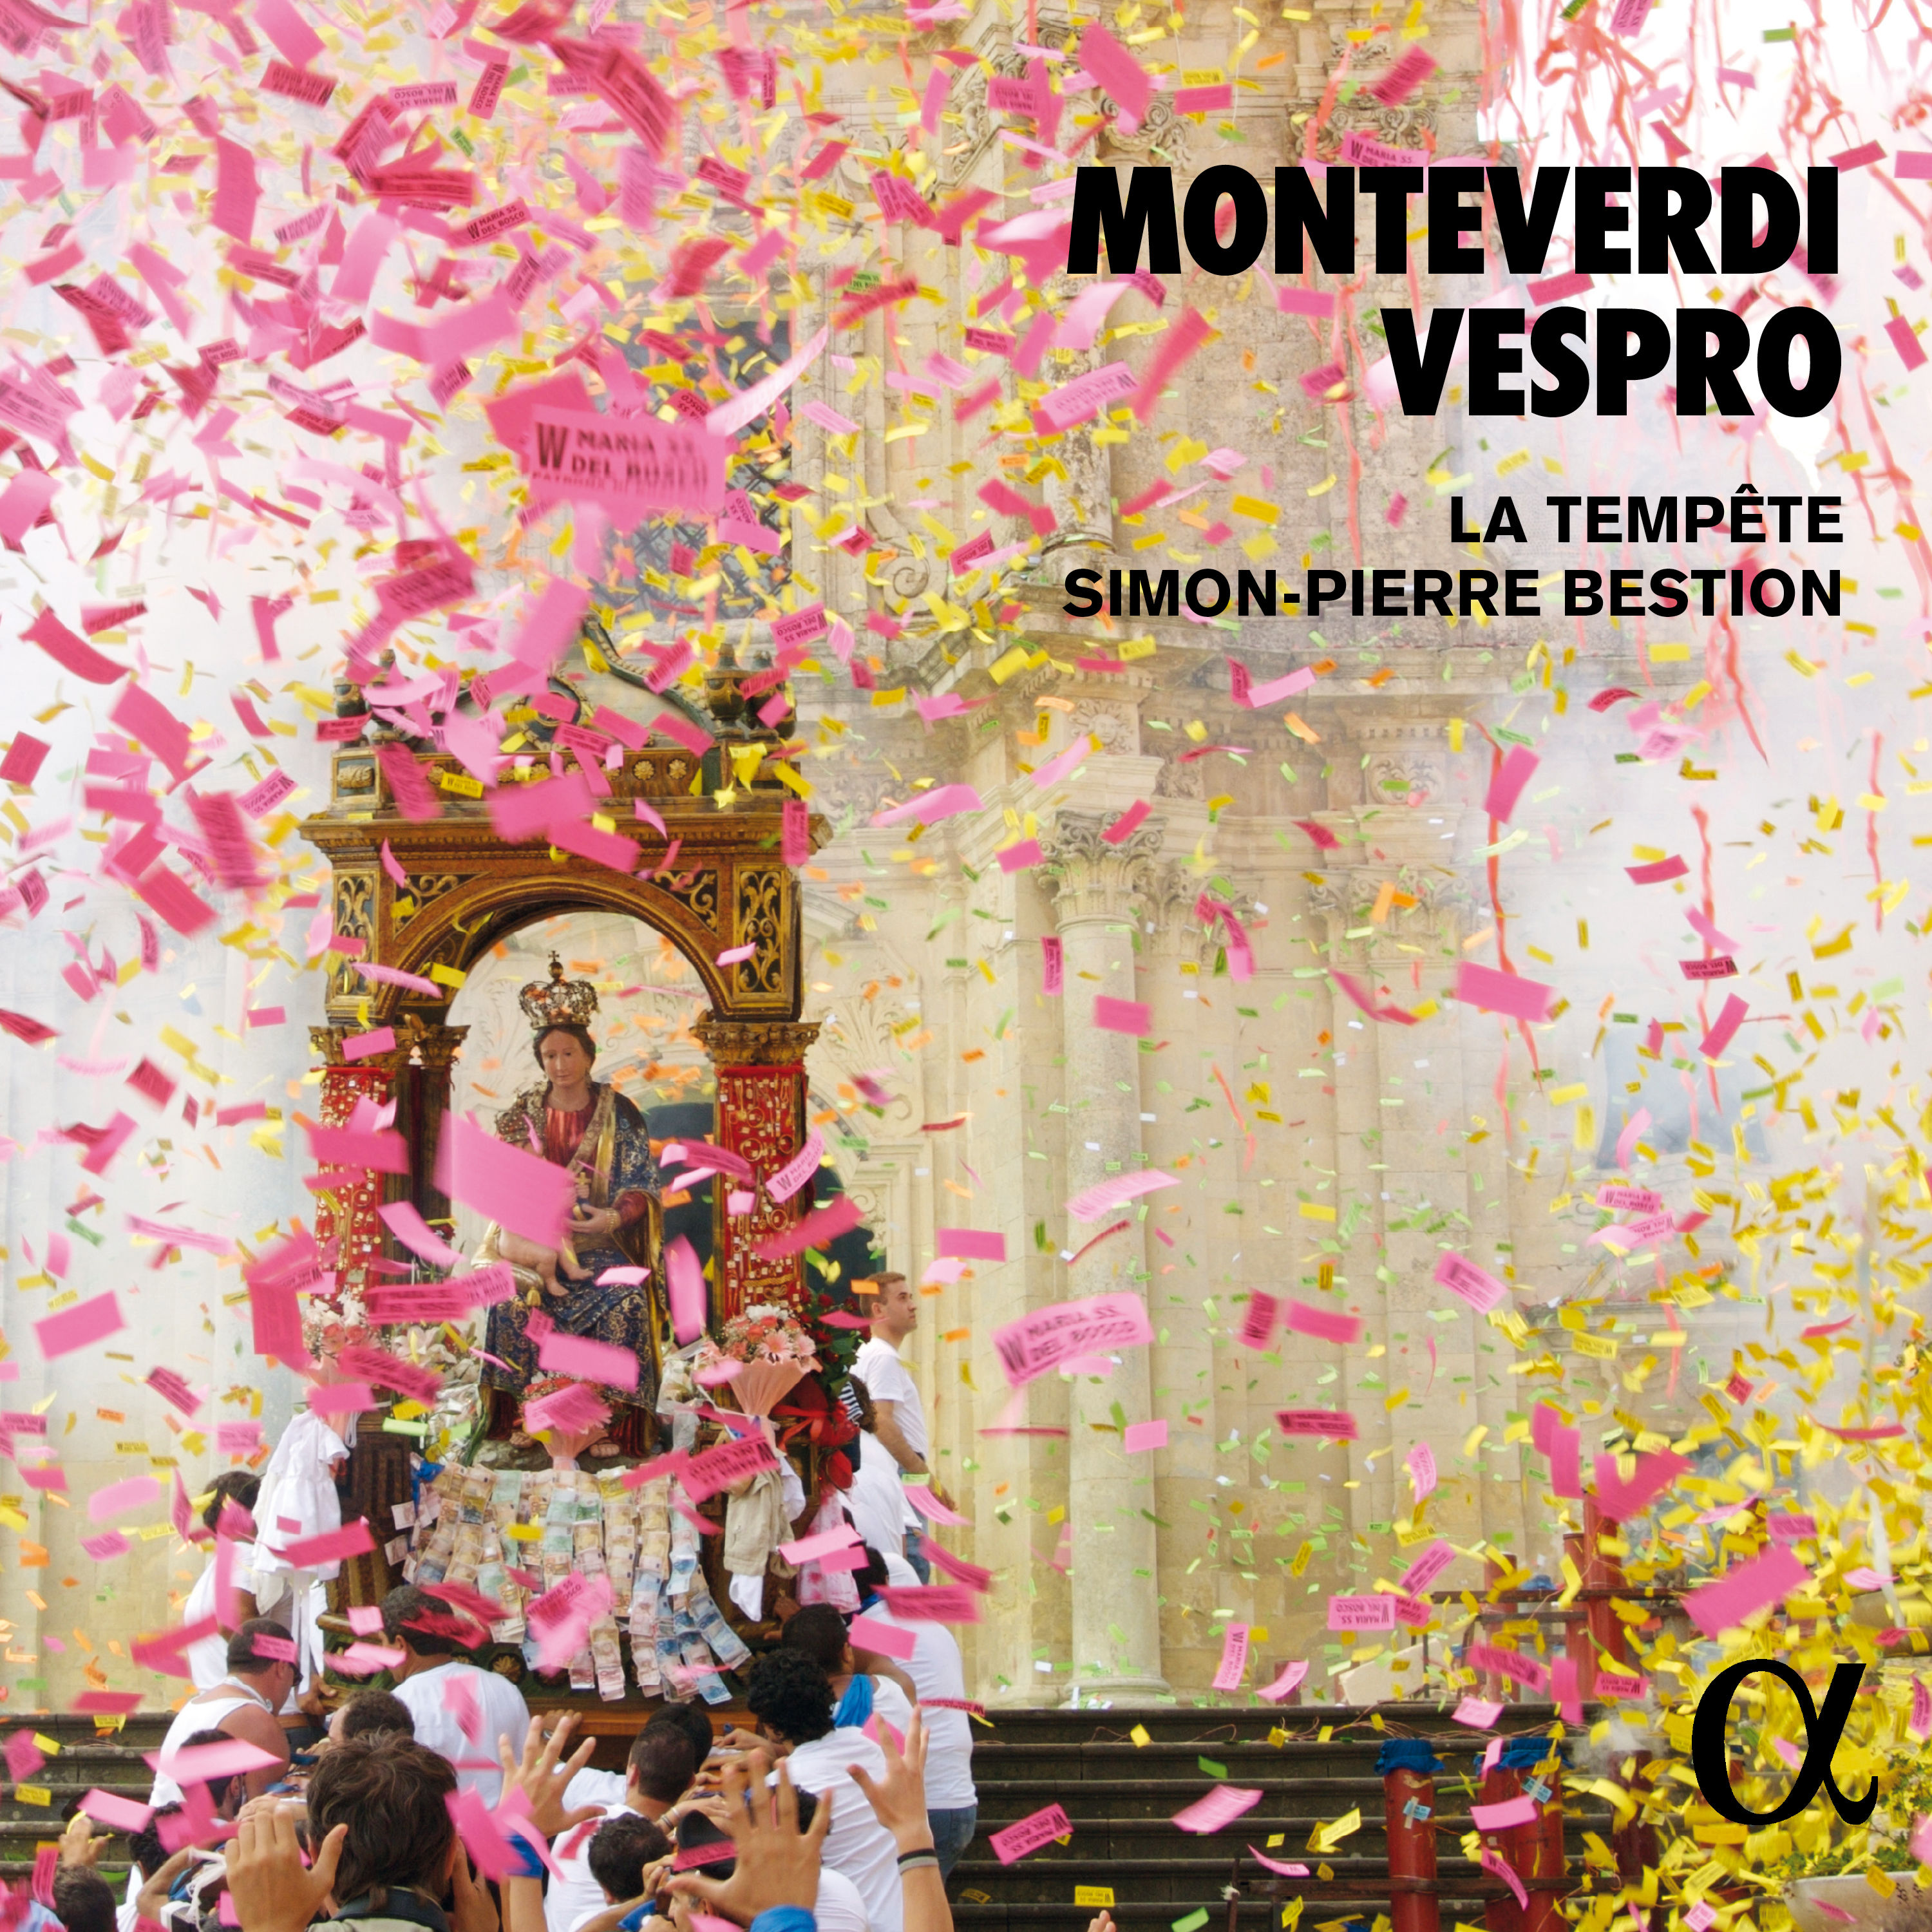 La tempete, Simon-Pierre Bestion – Monteverdi: Vespro (2019) [FLAC 24bit/96kHz]